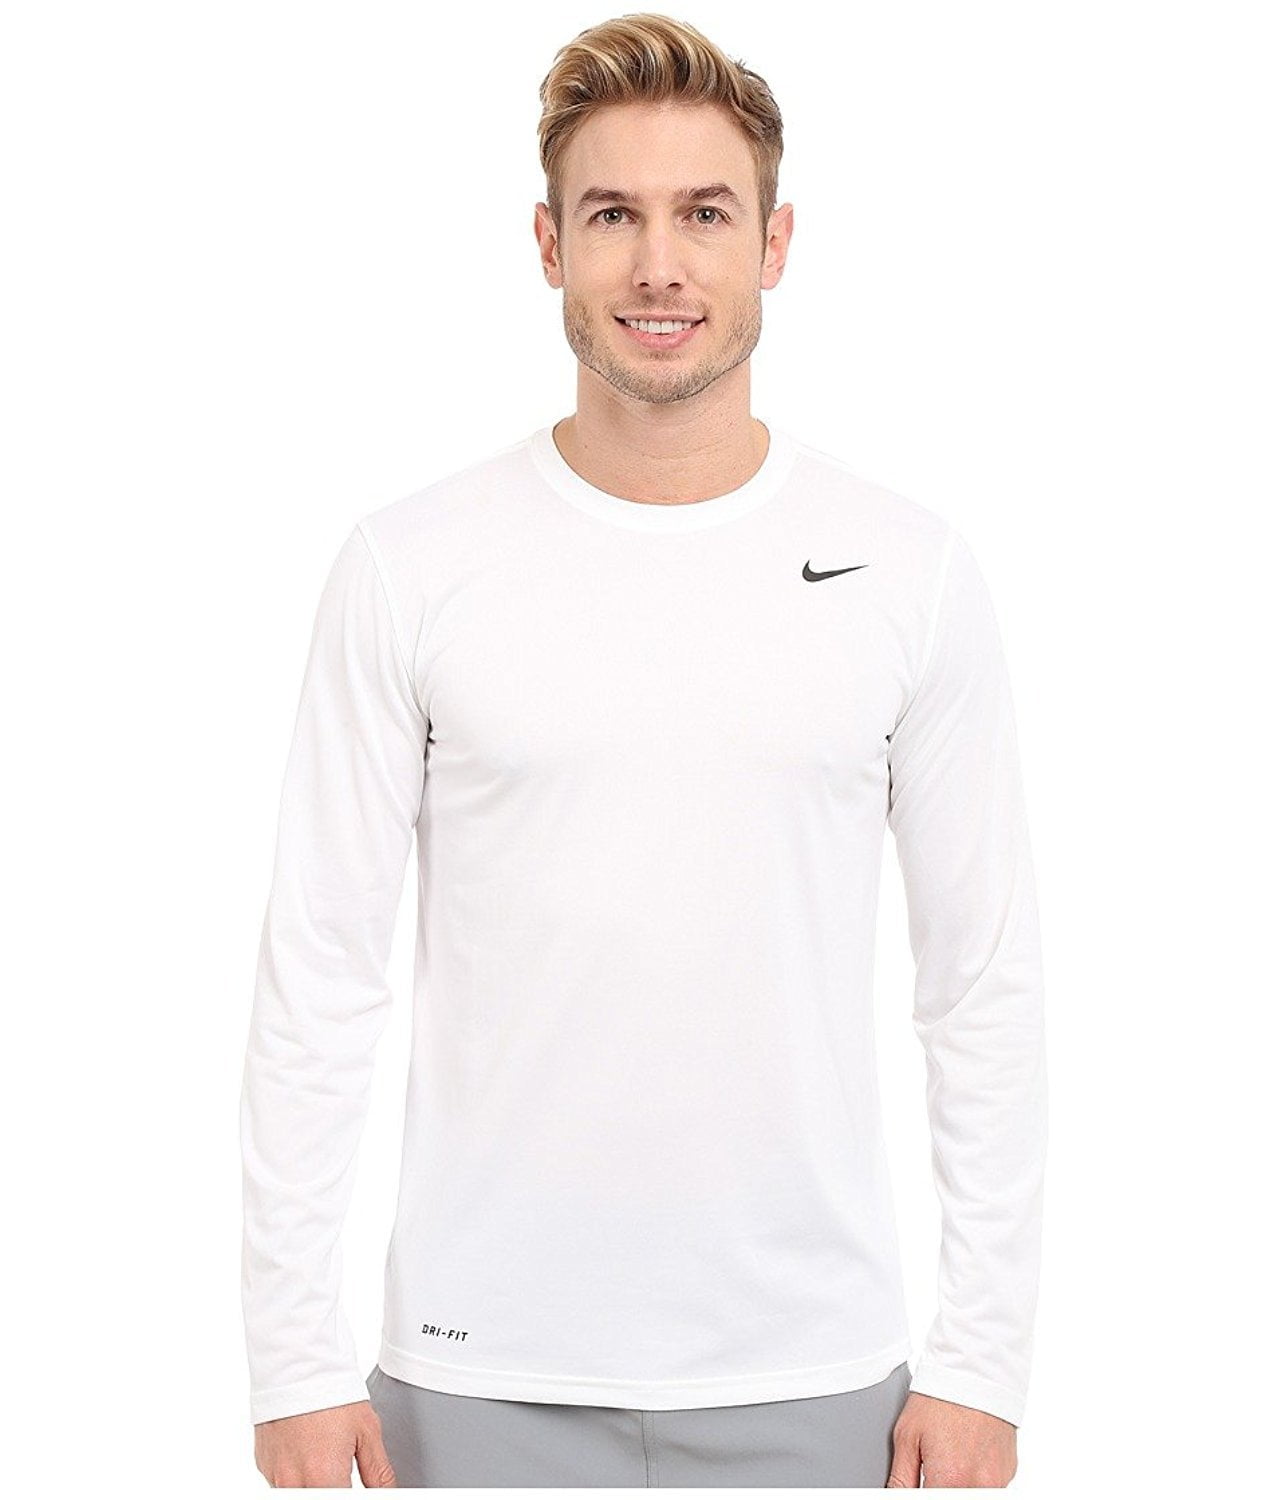 Nike 718837-100 : Legend 2.0 Long Sleeve Shirt (XL) - Walmart.com